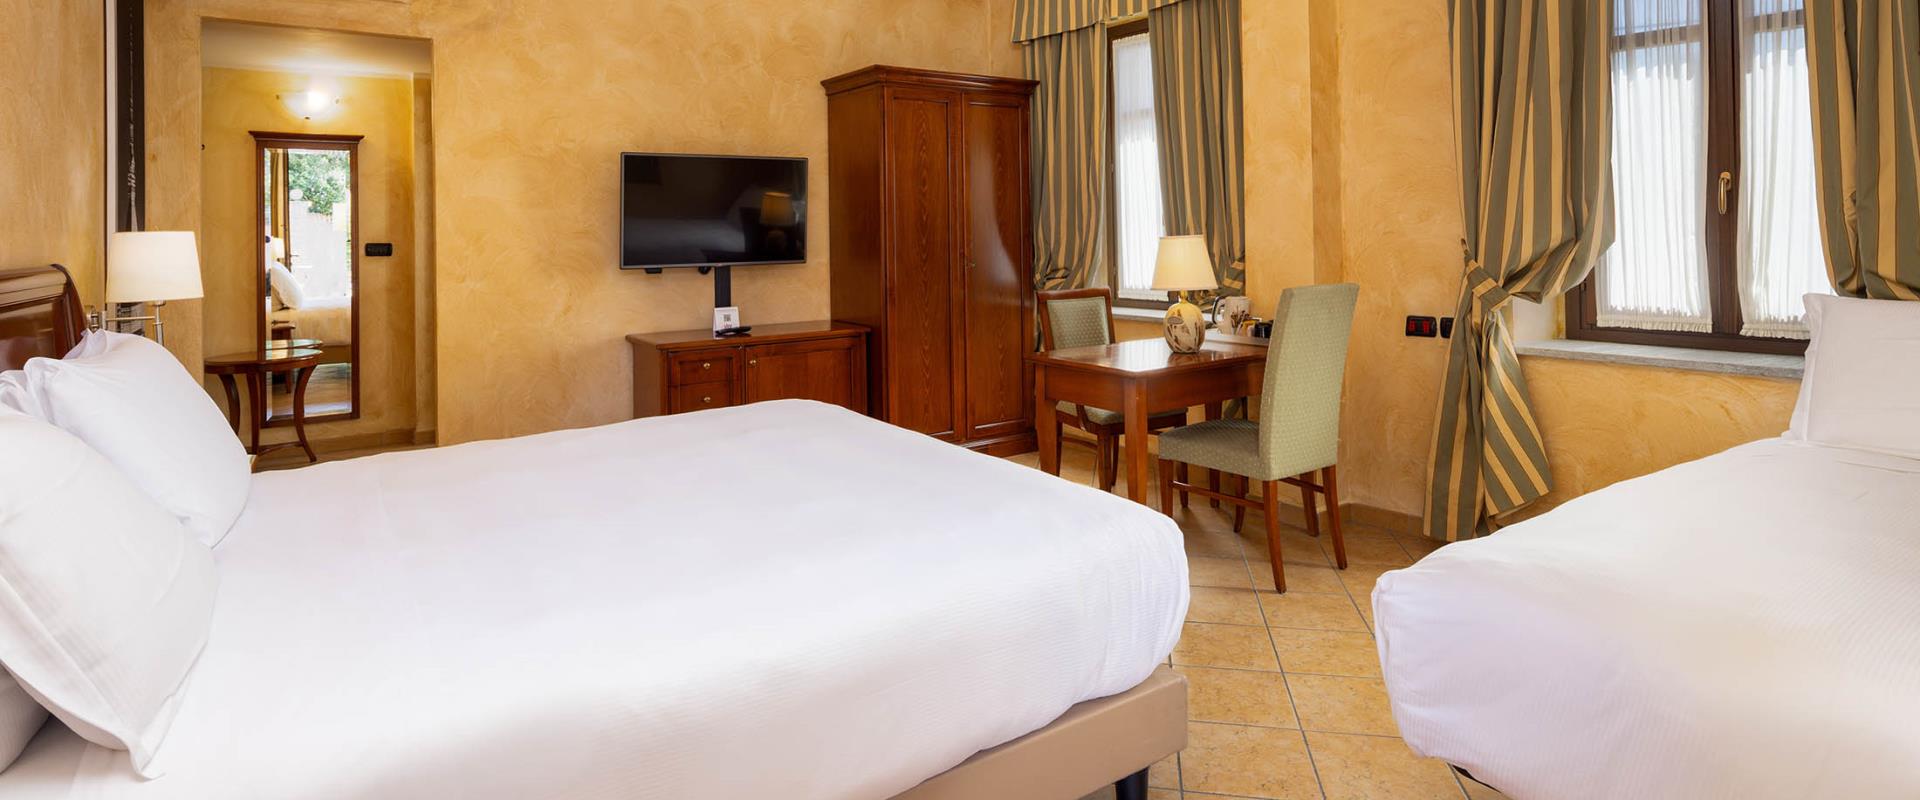 Sobrie ed eleganti, le camere del BW Plus Hotel Le Rondini Torino rispecchiano lo stile dell’antico casale e rendono il tuo soggiorno un’esperienza indimenticabile.